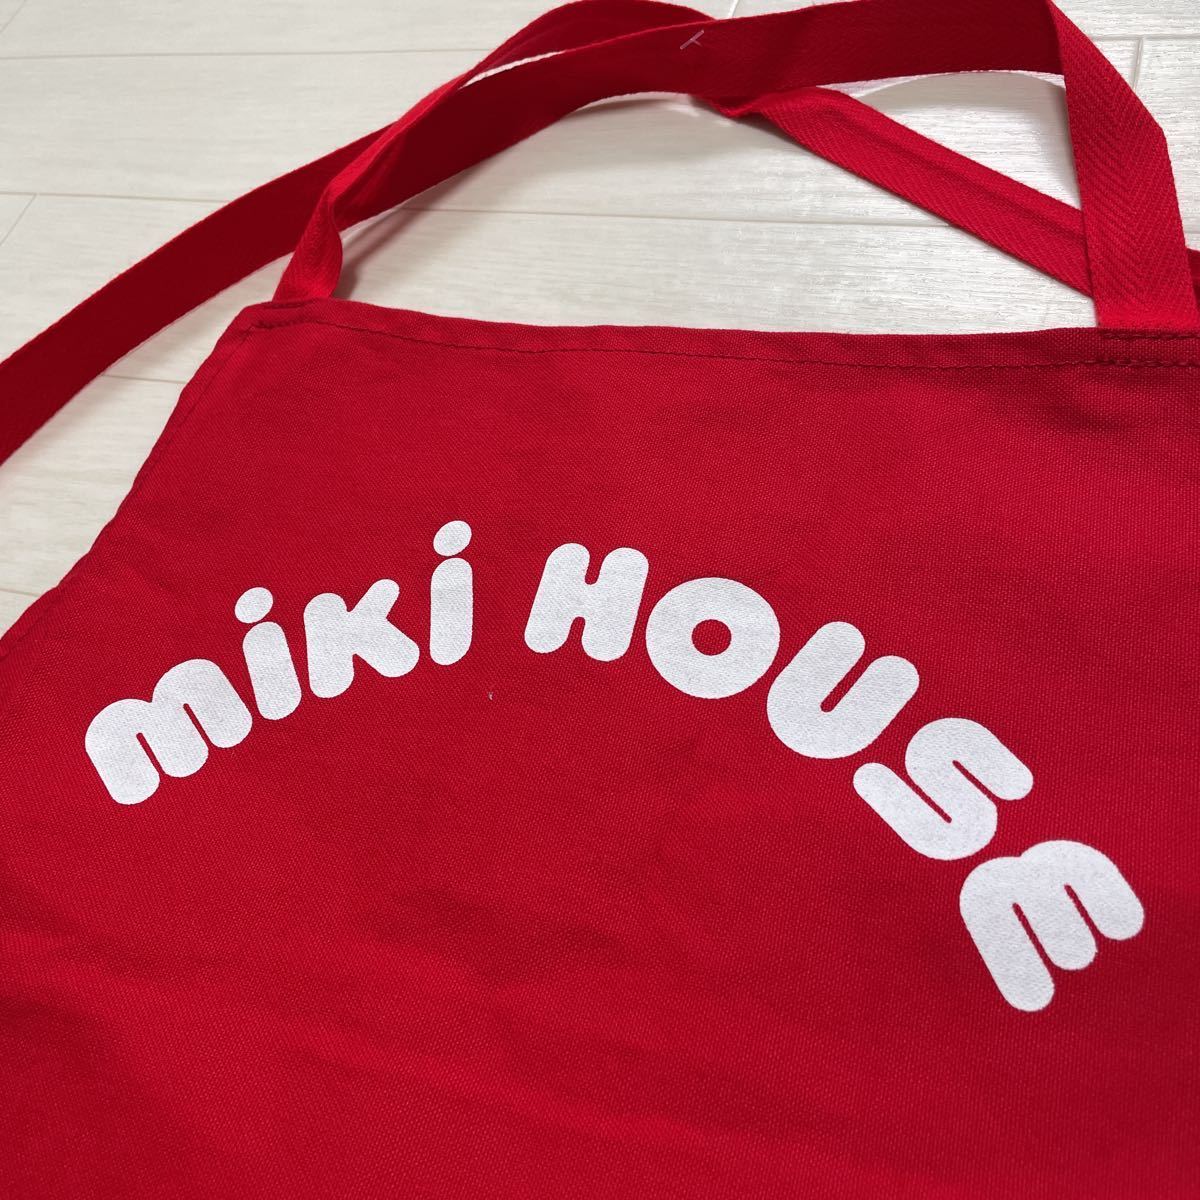  Miki House MIKI HOUSE для взрослых фартук Logo редкий редкий товар CHAMPS MH 1950.51 сделано в Японии красный цвет не использовался 